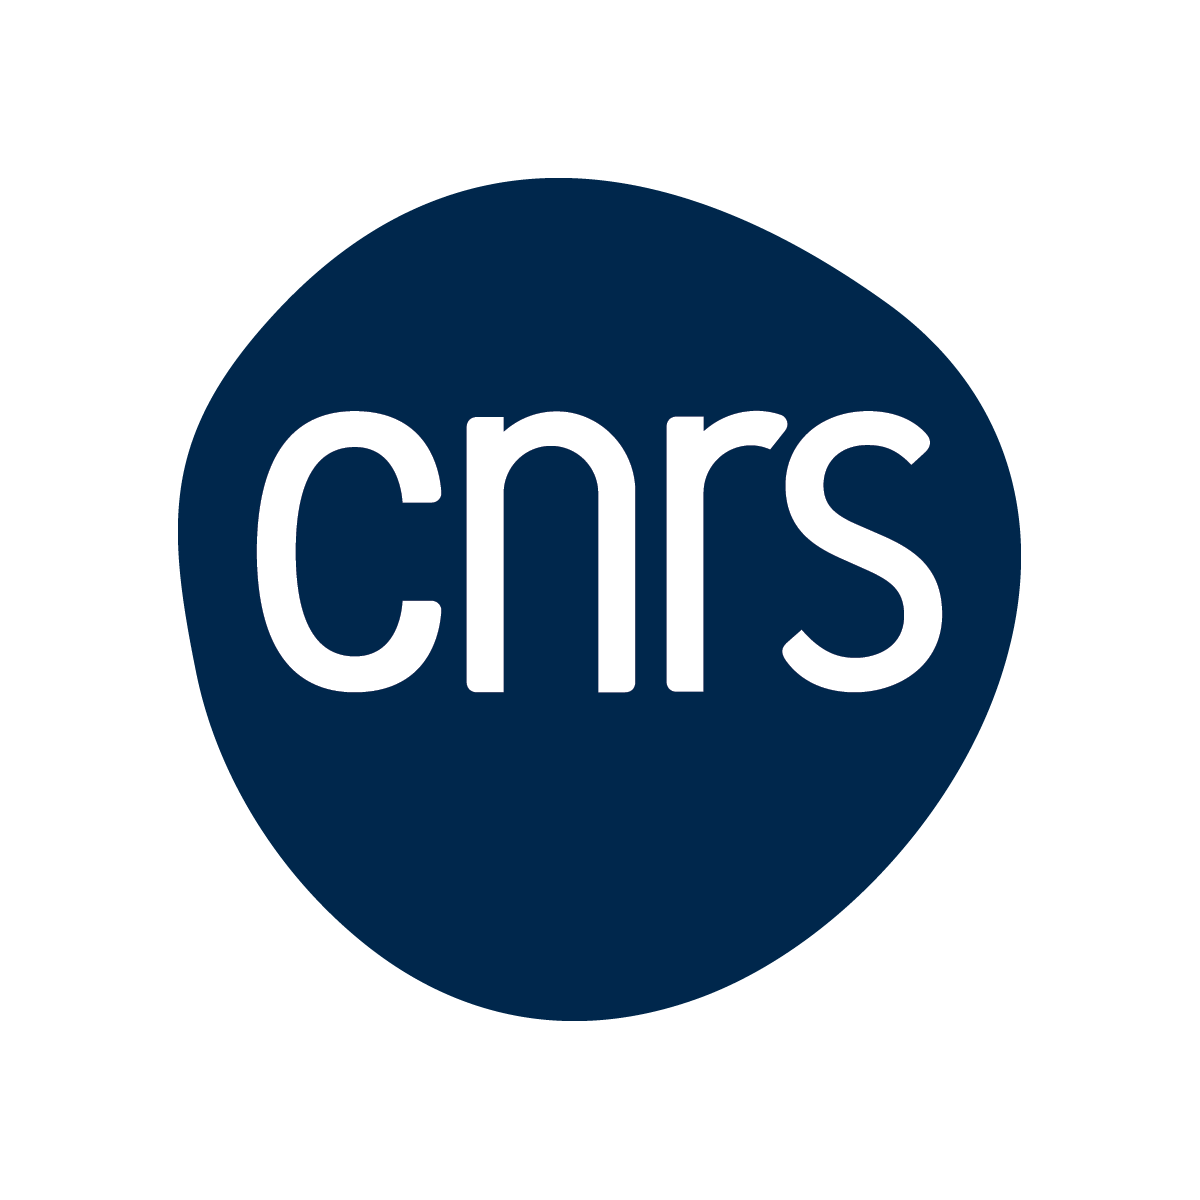 Centre National de la Recherche Scientifique (CNRS)